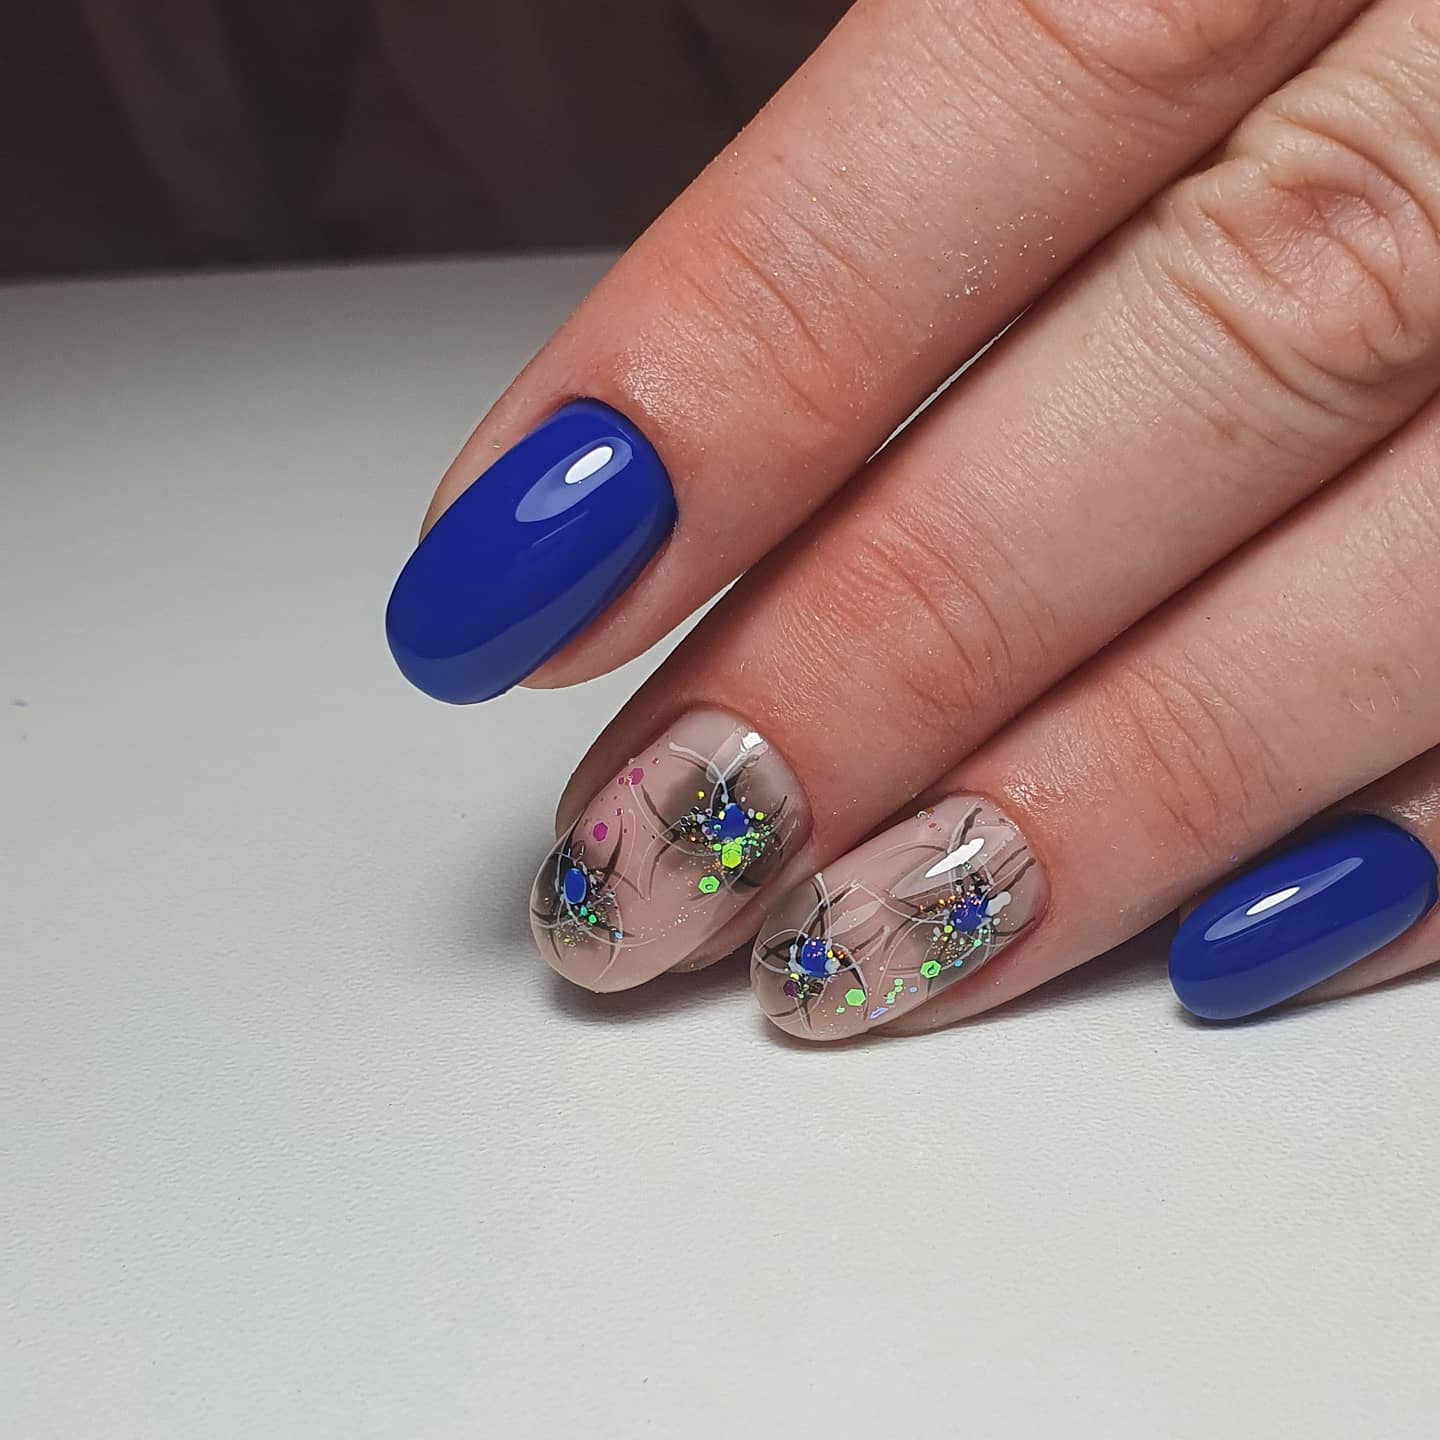 Маникюр с абстрактным рисунком в синем цвете на короткие ногти.